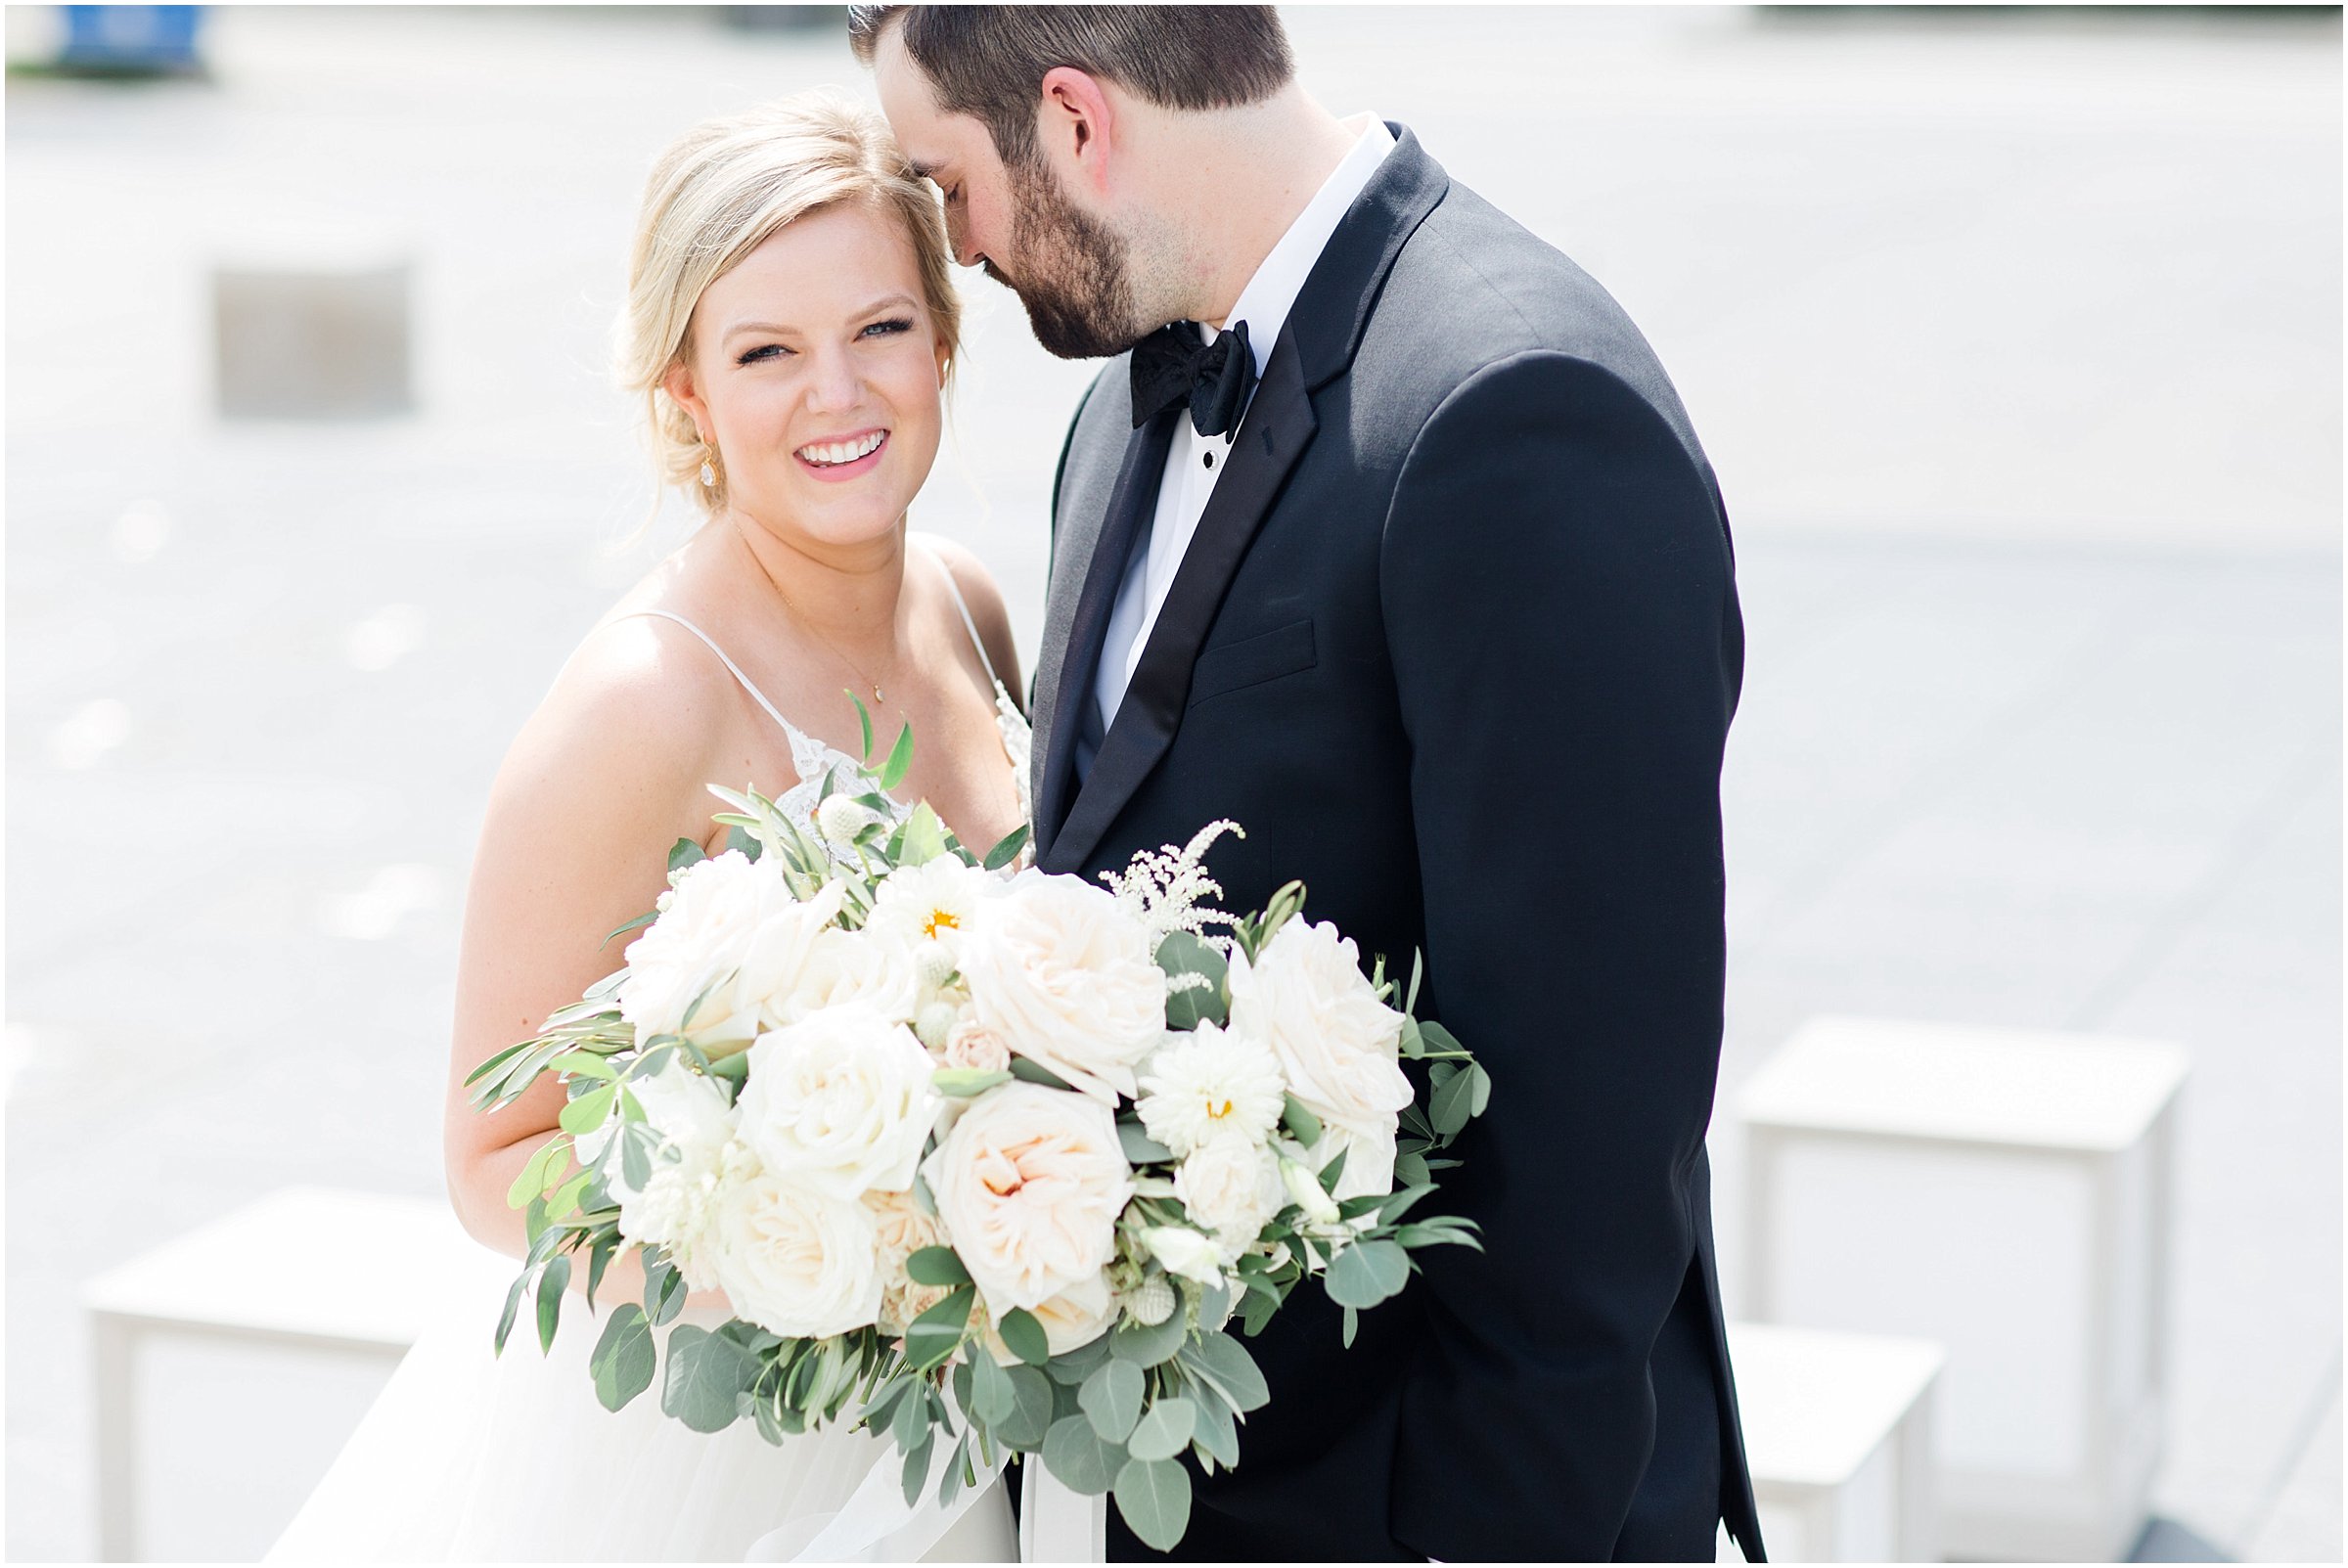 A Biltwell Event Center Wedding | Kate & Matt - Sami Renee Photography